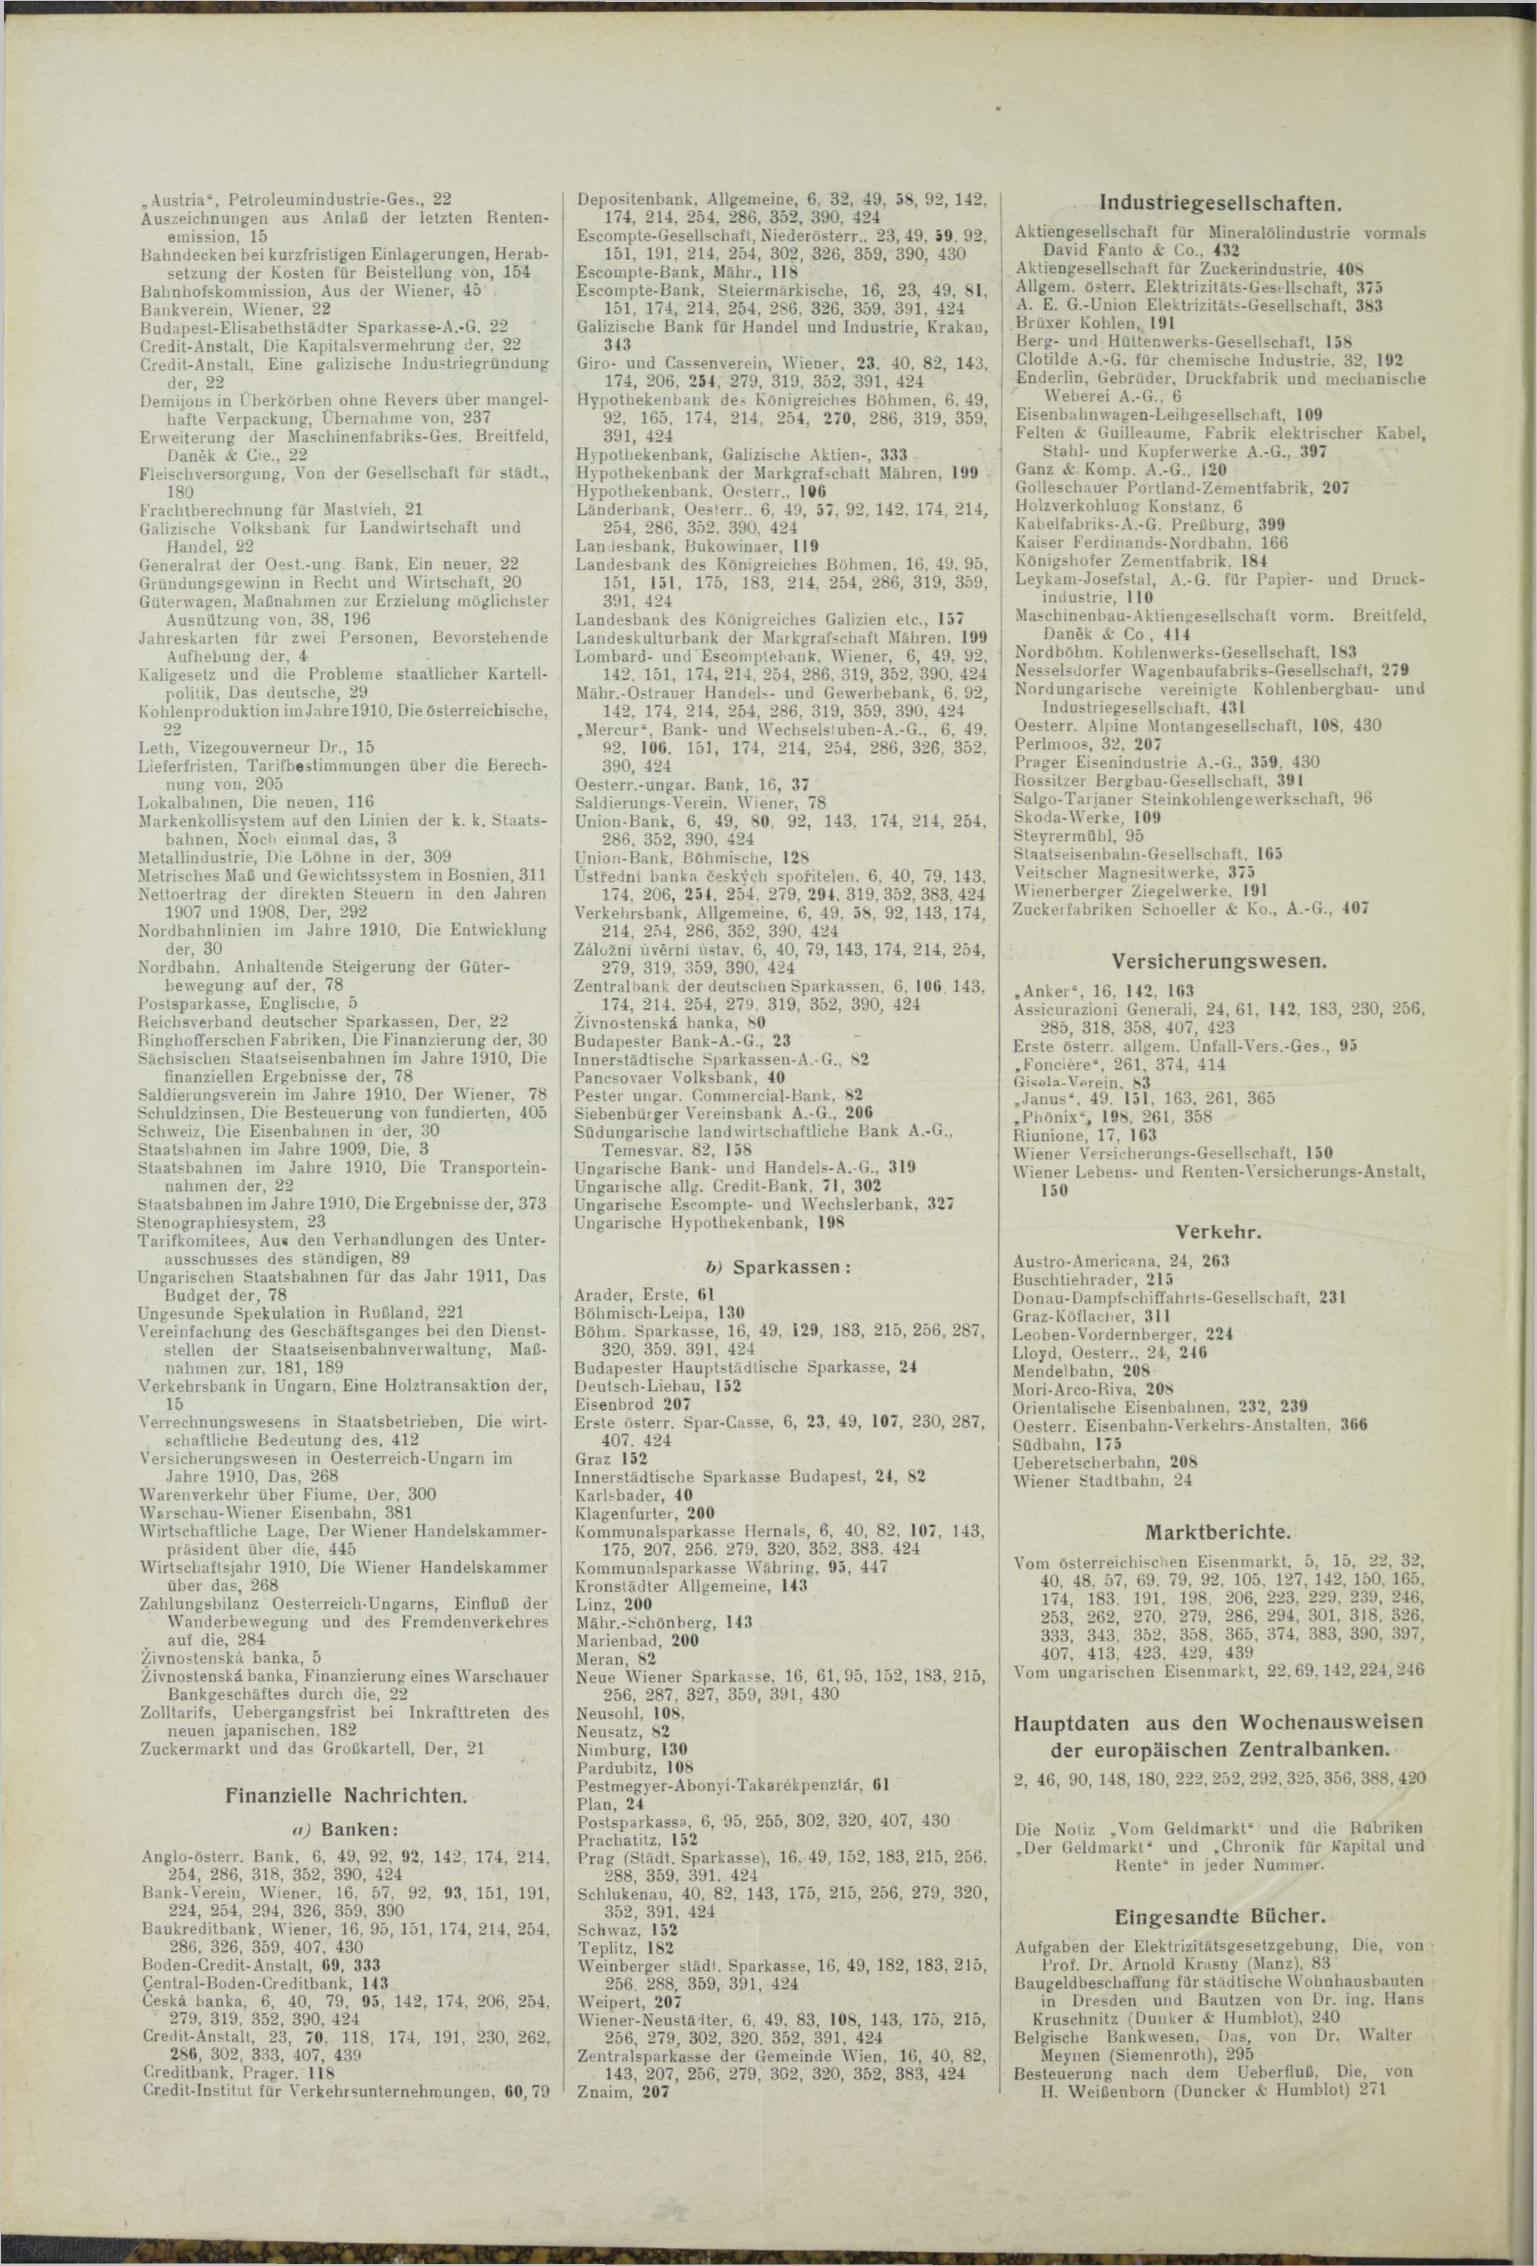 Der Tresor 01.04.1911 - Seite 12